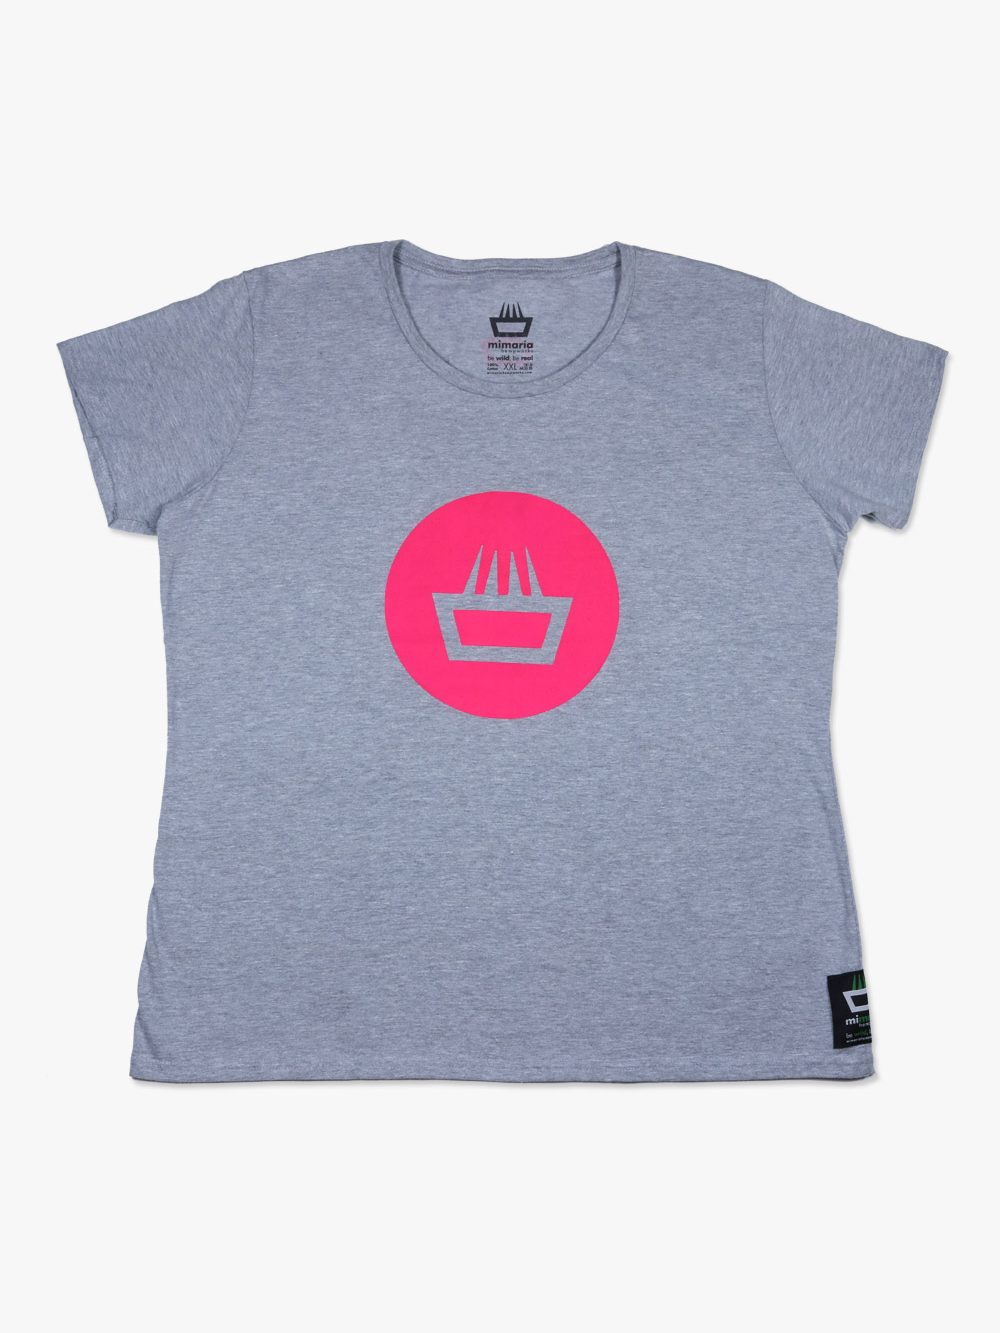 Camiseta mimaría hempworks para chica de color gris y logo negative fucsia